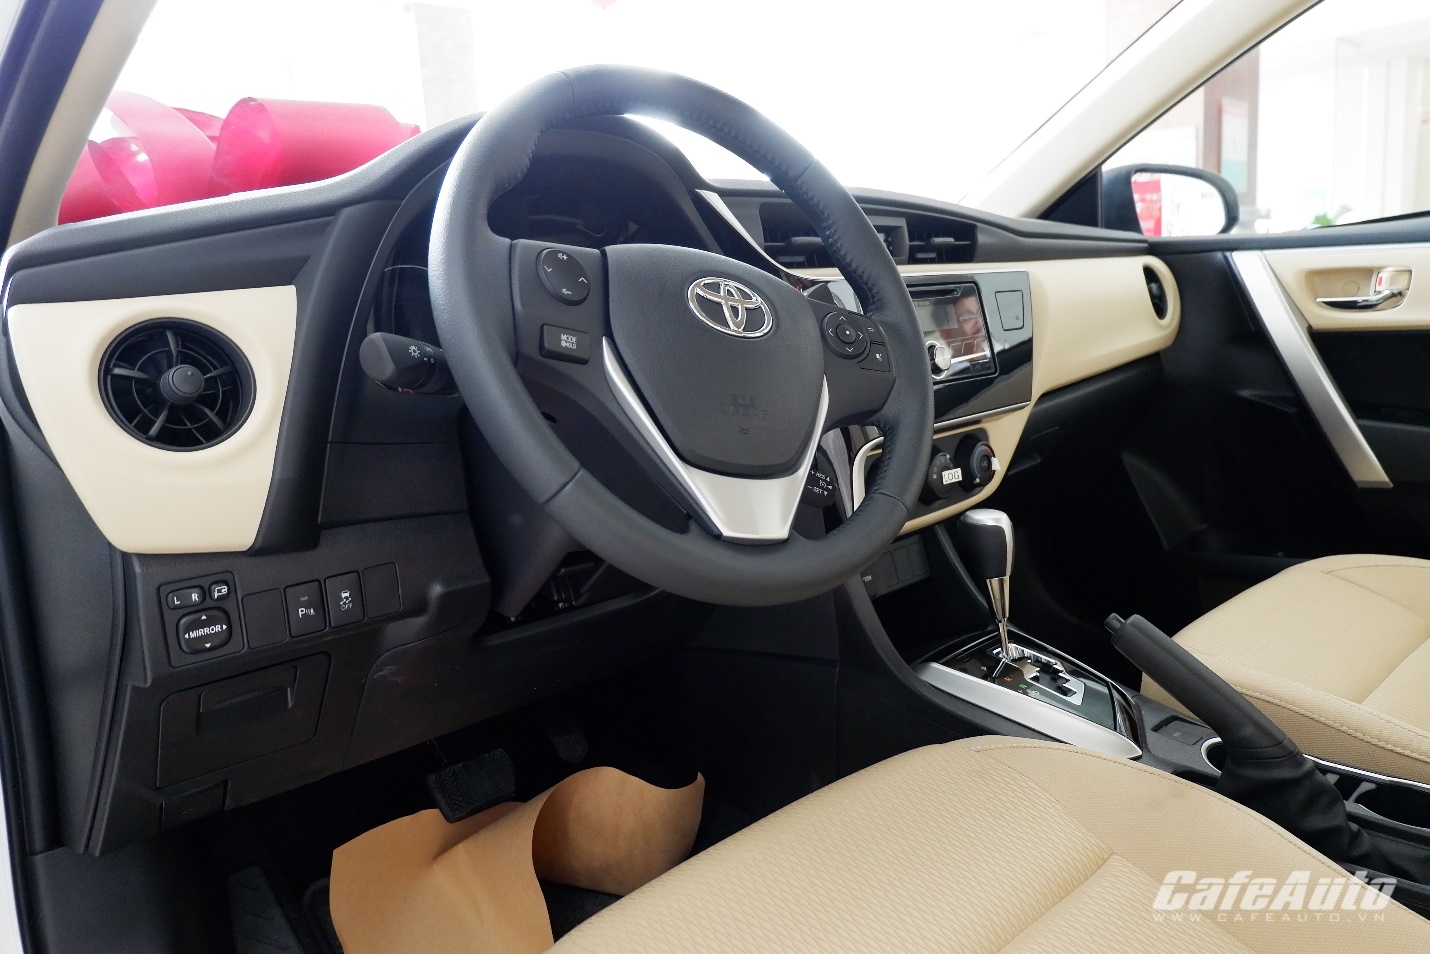 Toyota Corolla Altis phiên bản nâng cấp: bổ sung hệ thống Cruise Control, giá tăng nhẹ - ảnh 9